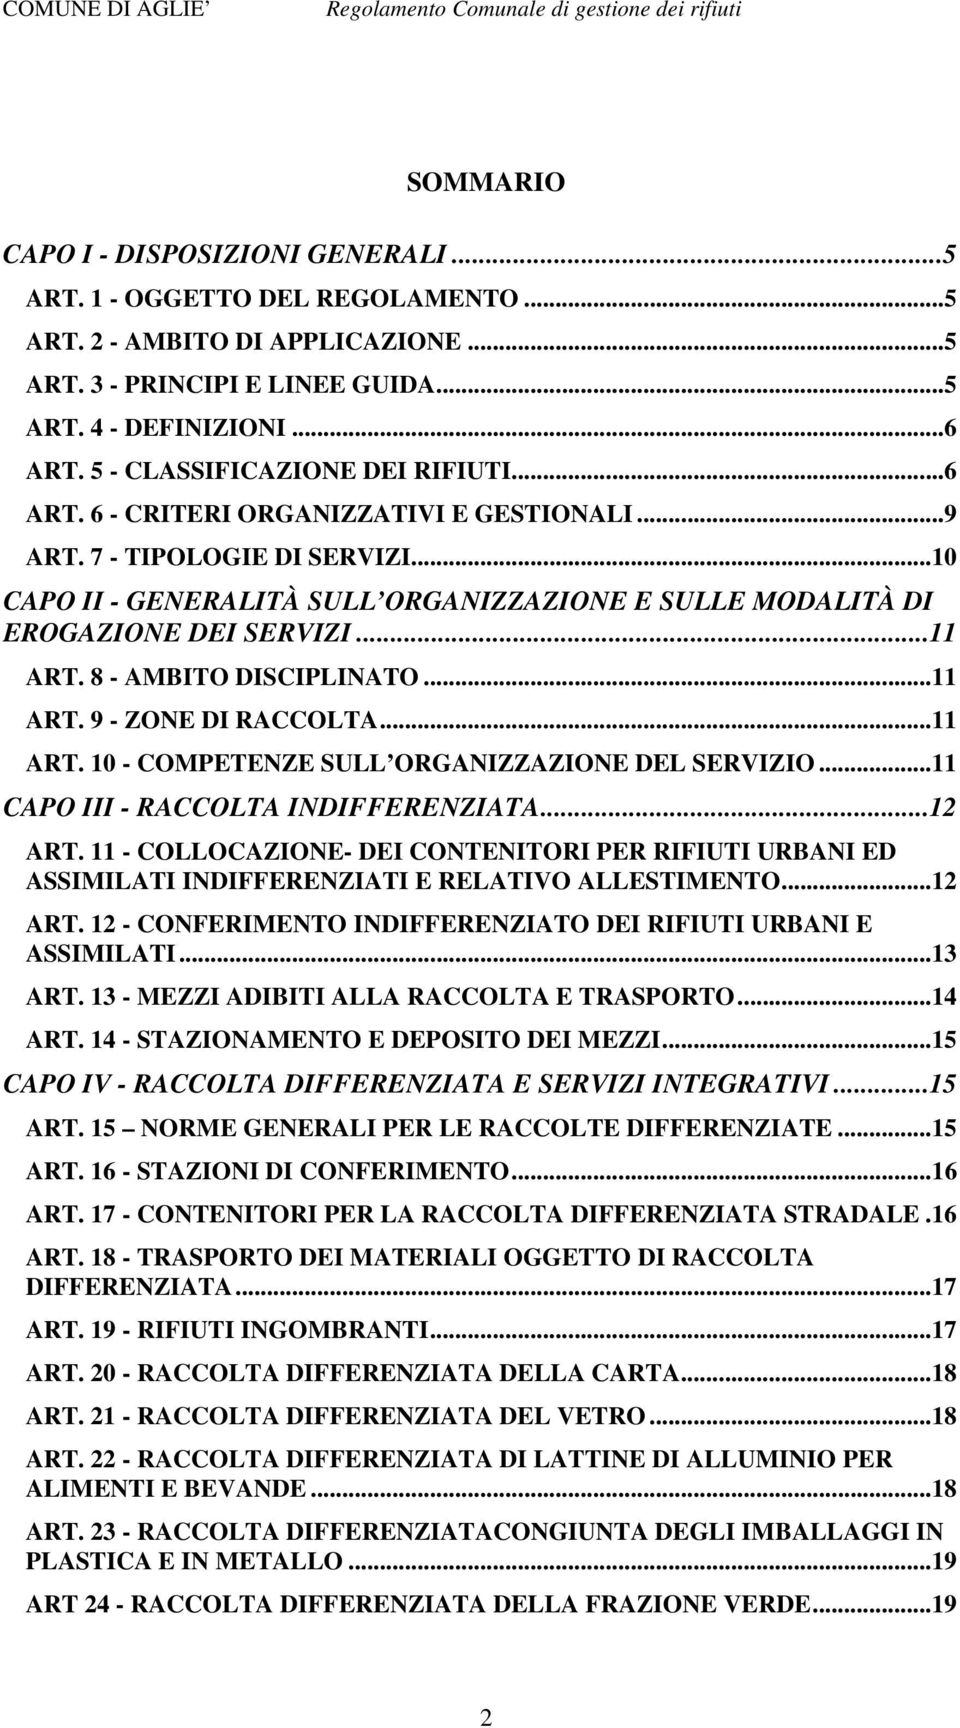 ..10 CAPO II - GENERALITÀ SULL ORGANIZZAZIONE E SULLE MODALITÀ DI EROGAZIONE DEI SERVIZI...11 ART. 8 - AMBITO DISCIPLINATO...11 ART. 9 - ZONE DI RACCOLTA...11 ART. 10 - COMPETENZE SULL ORGANIZZAZIONE DEL SERVIZIO.